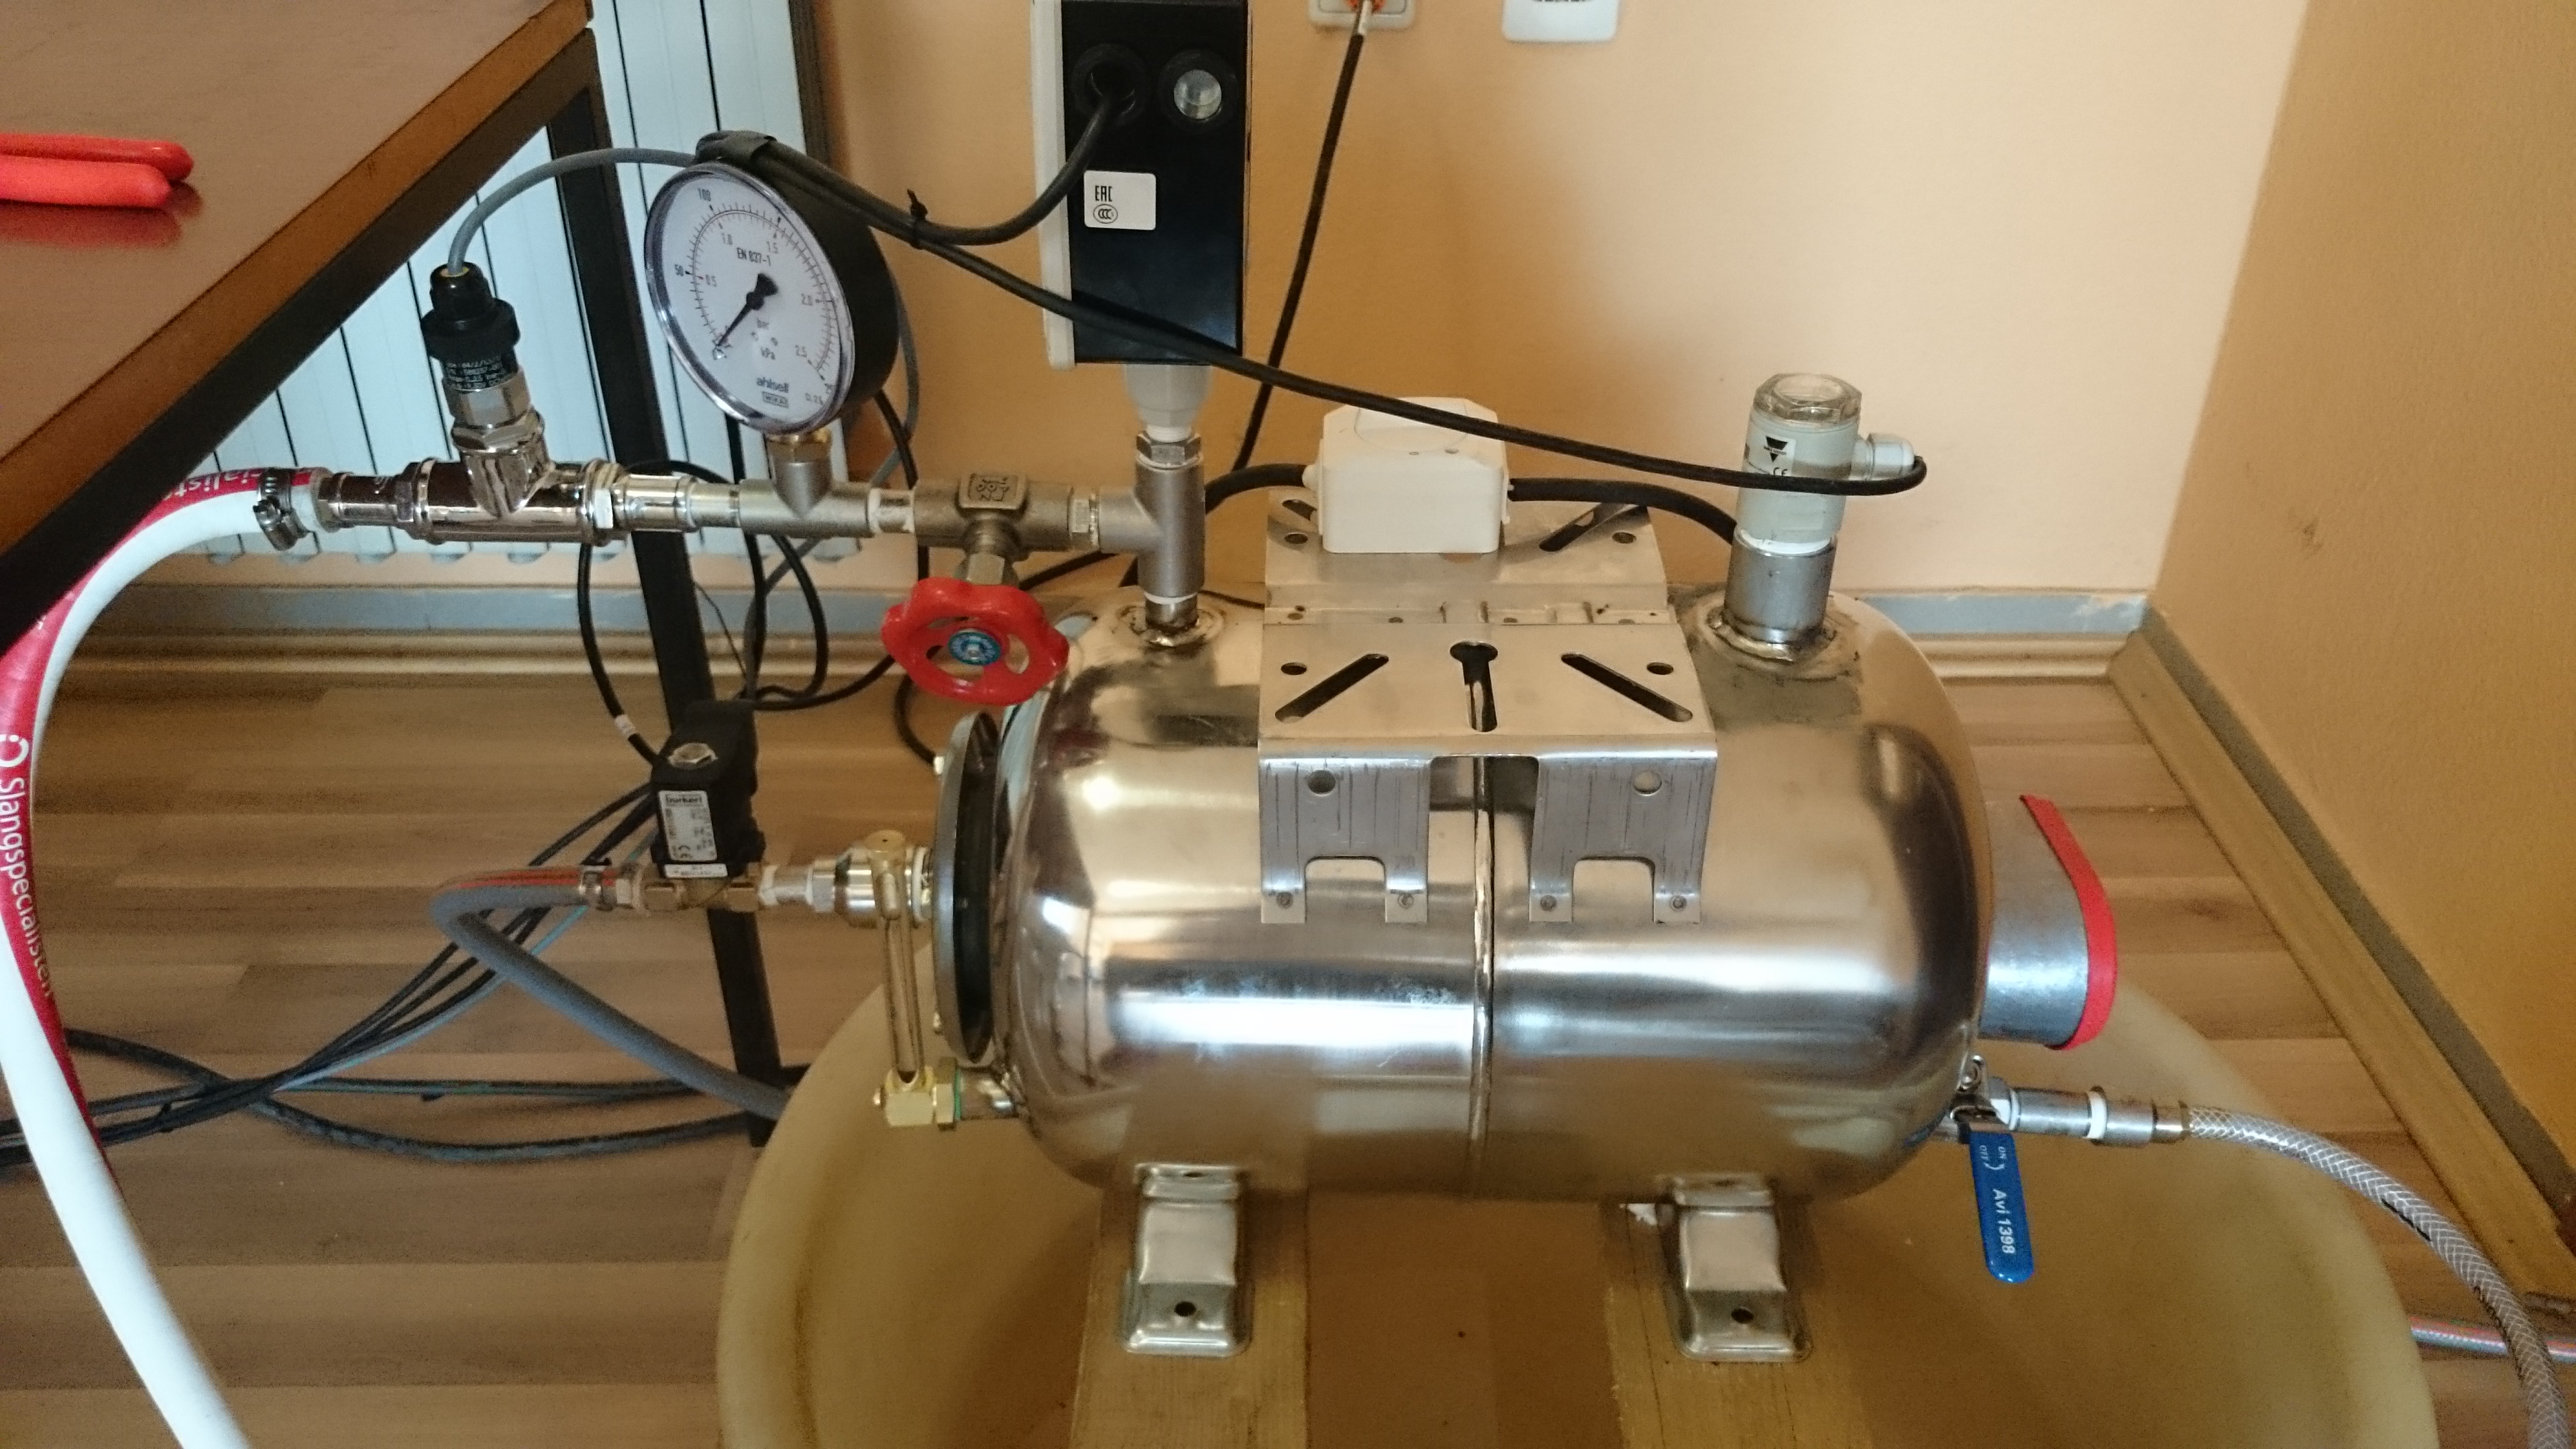 Laboratory steam boiler